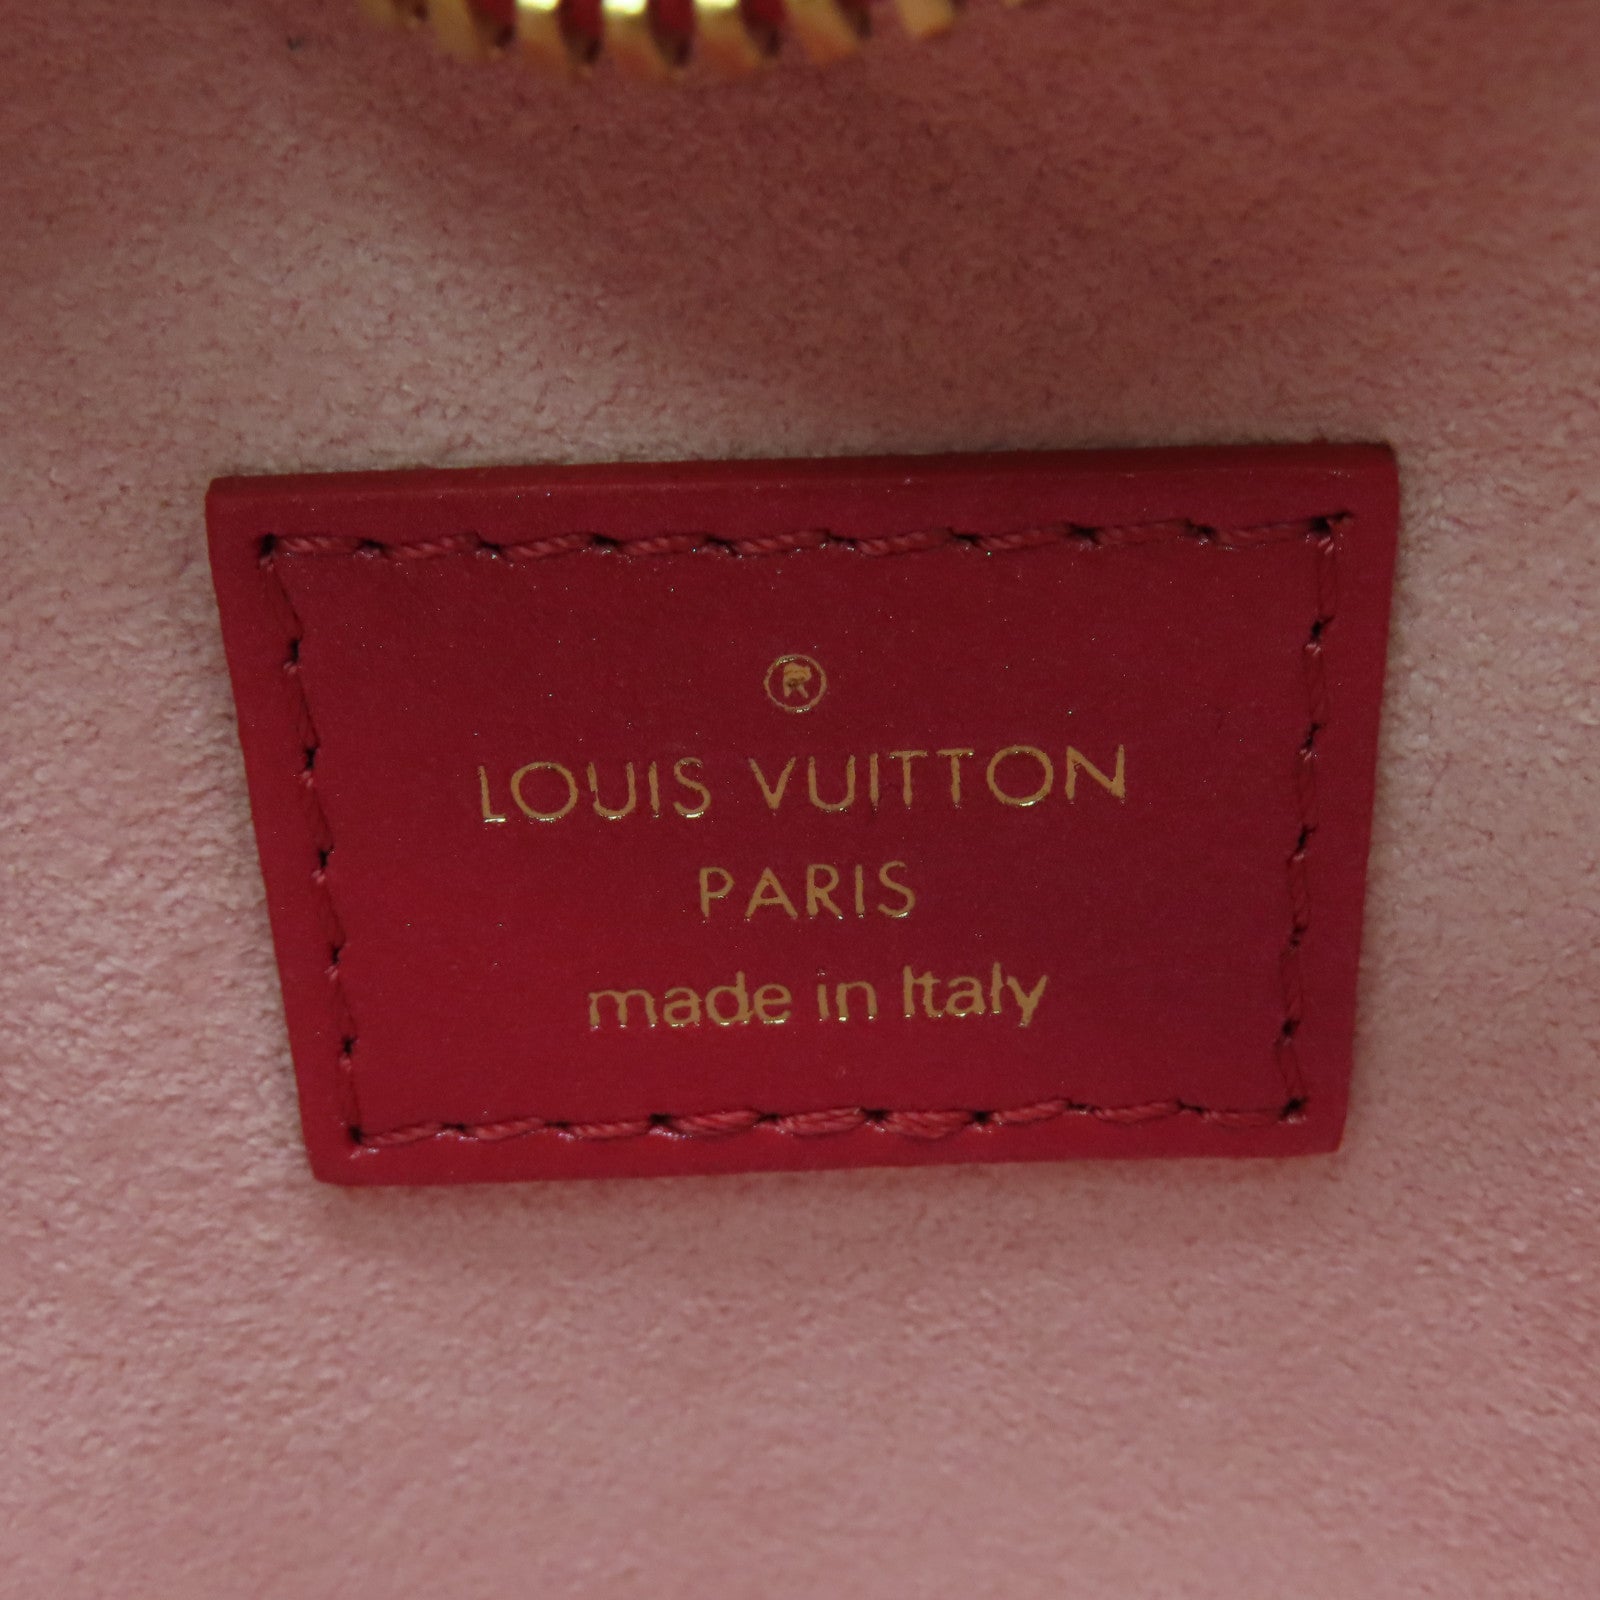 Louis Vuitton Louis Vuitton Monogram Heart M80837 Chain Handbag